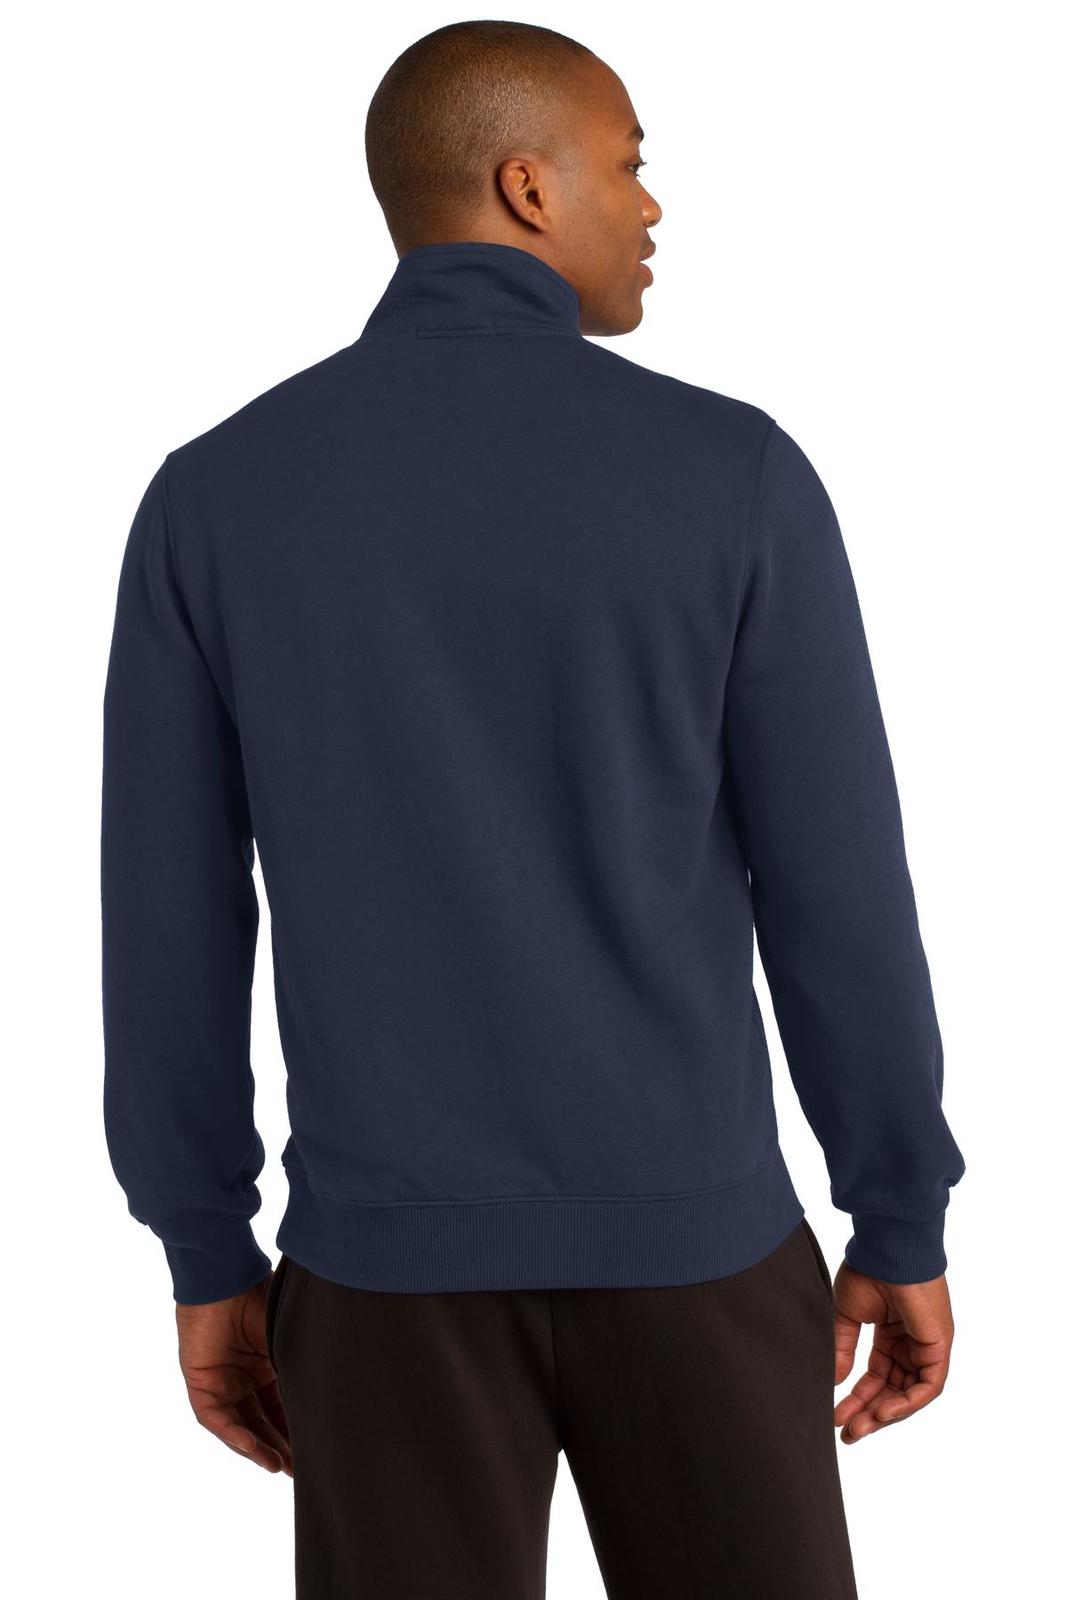 SPORT-TEK Mens 1/4 Zip Sweatshirt 